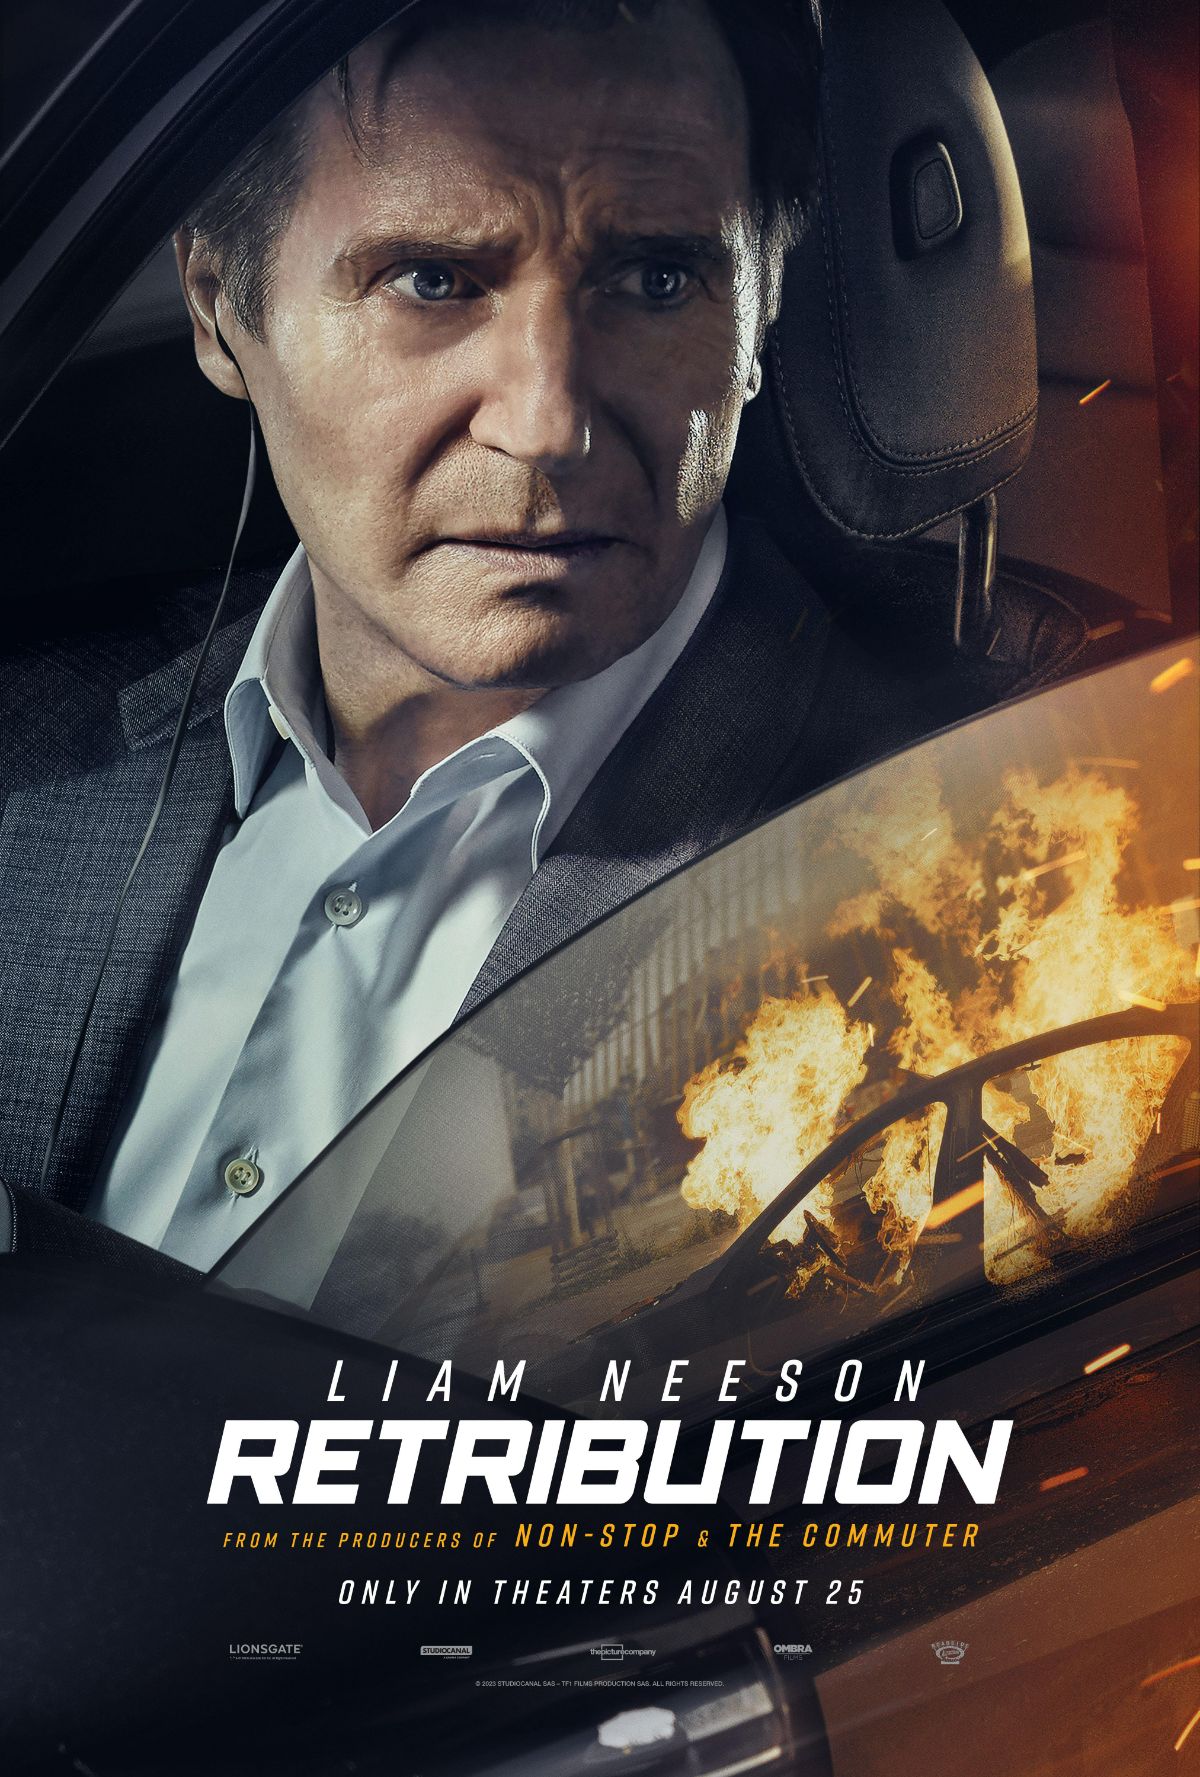 Retribution (Trừng Phạt) cũng sở hữu nhiều pha rượt đuổi và đấu trí căng thẳng khi ghi dấu sự tái xuất của Liam Neeson và nhà sản xuất của Non-Stop và The Commuter